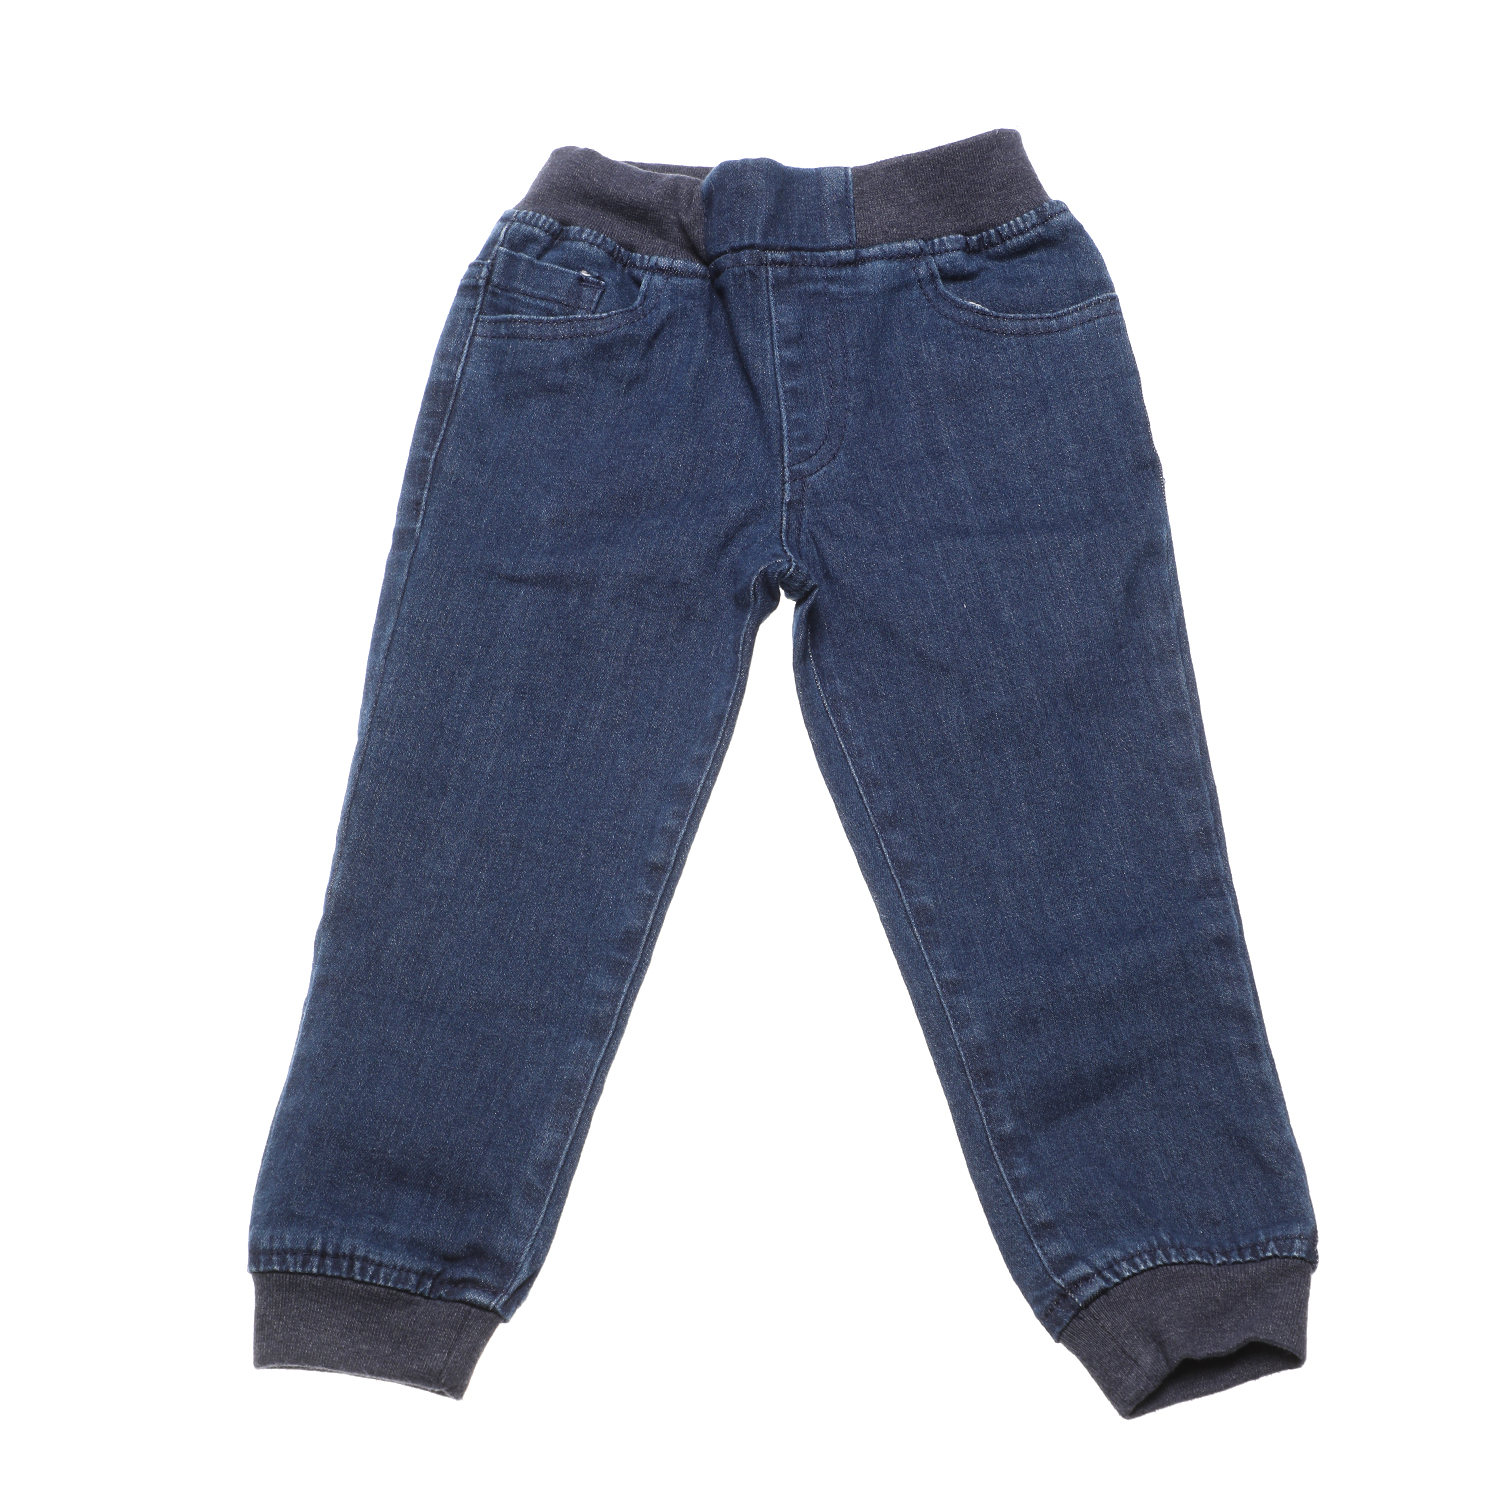 Παιδικά/Boys/Ρούχα/Παντελόνια SAM 0-13 - Παιδικό jean παντελόνι SAM 0-13 μπλε